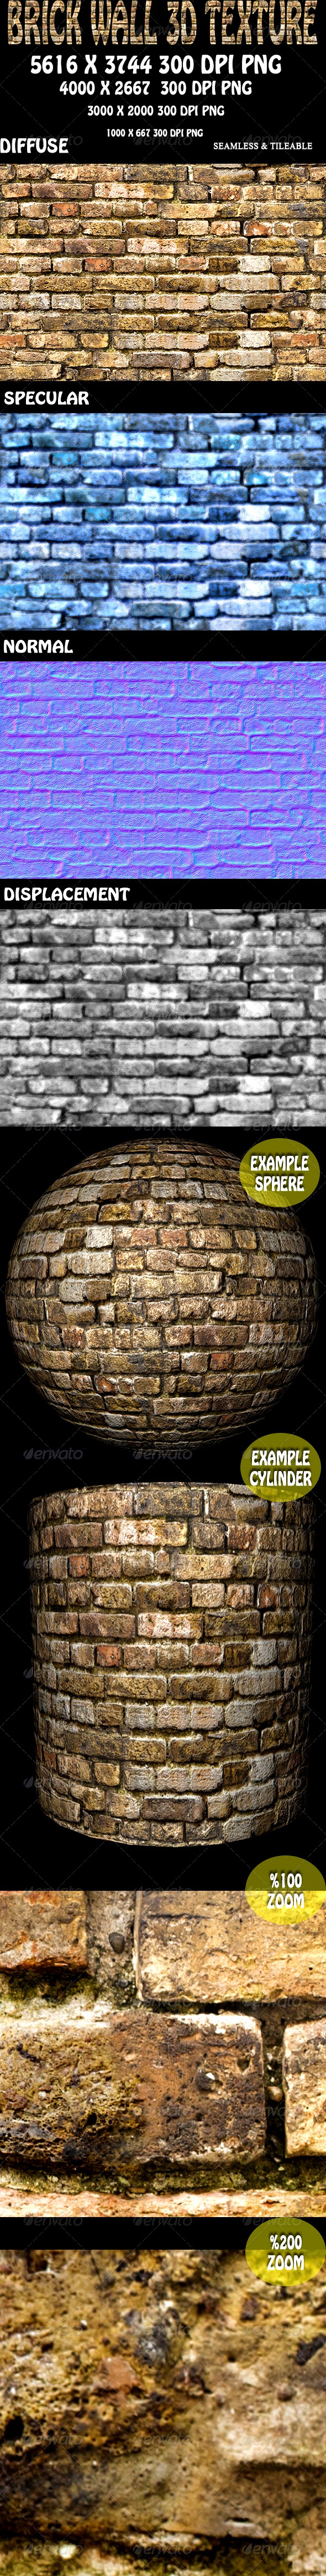 Brick Wall 3D Texture